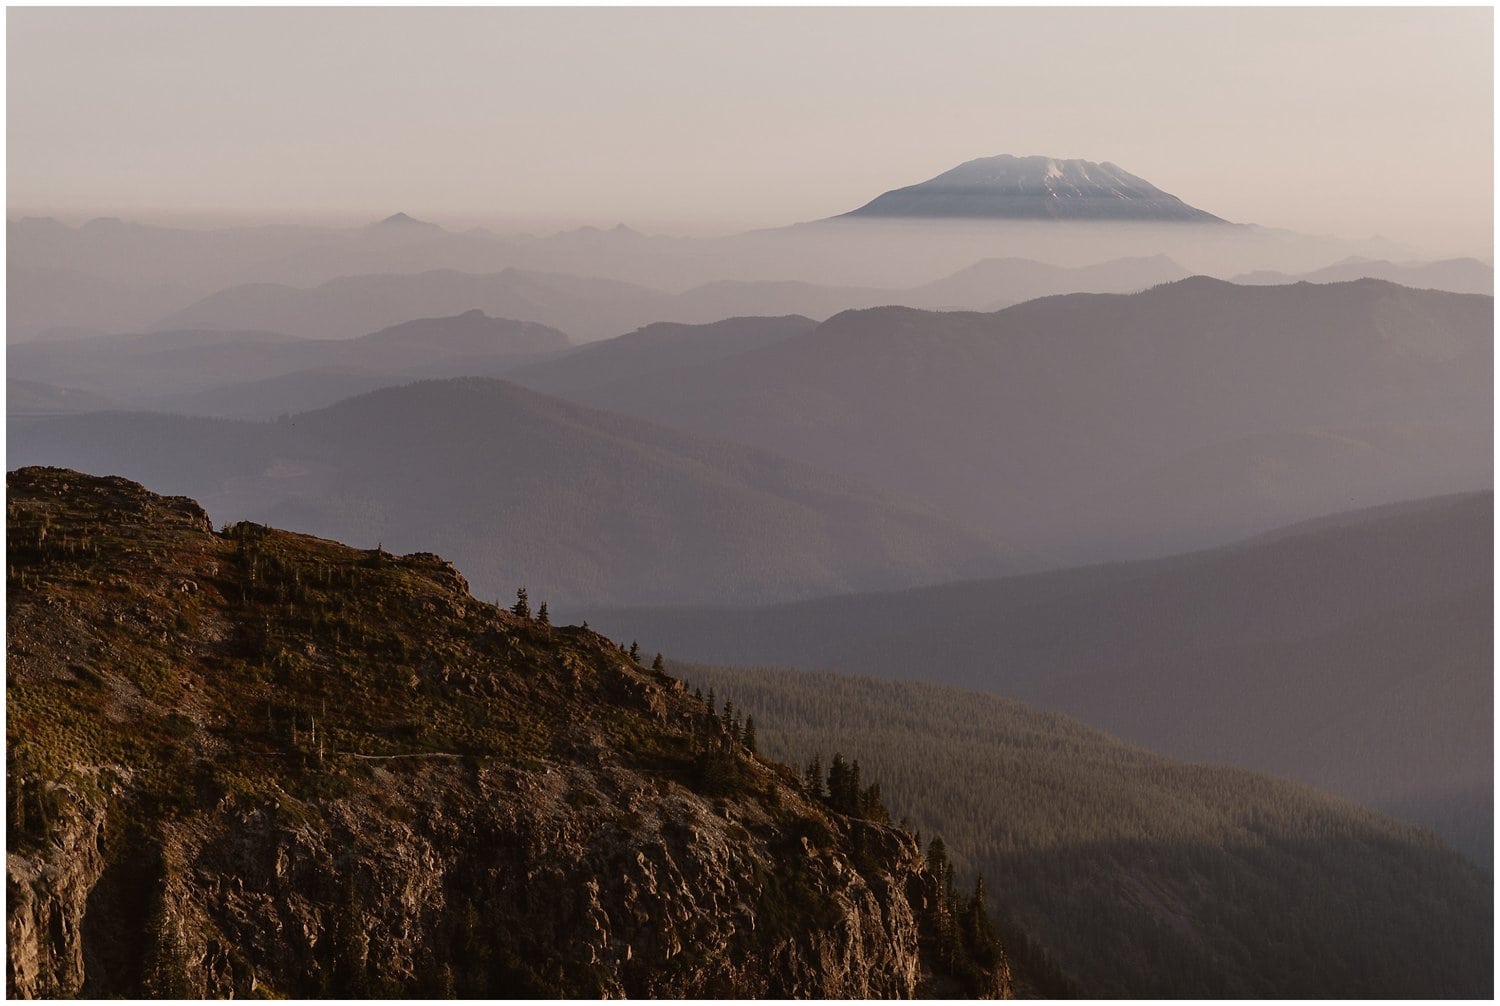 Landscape of mountains at sunrise in Washington.